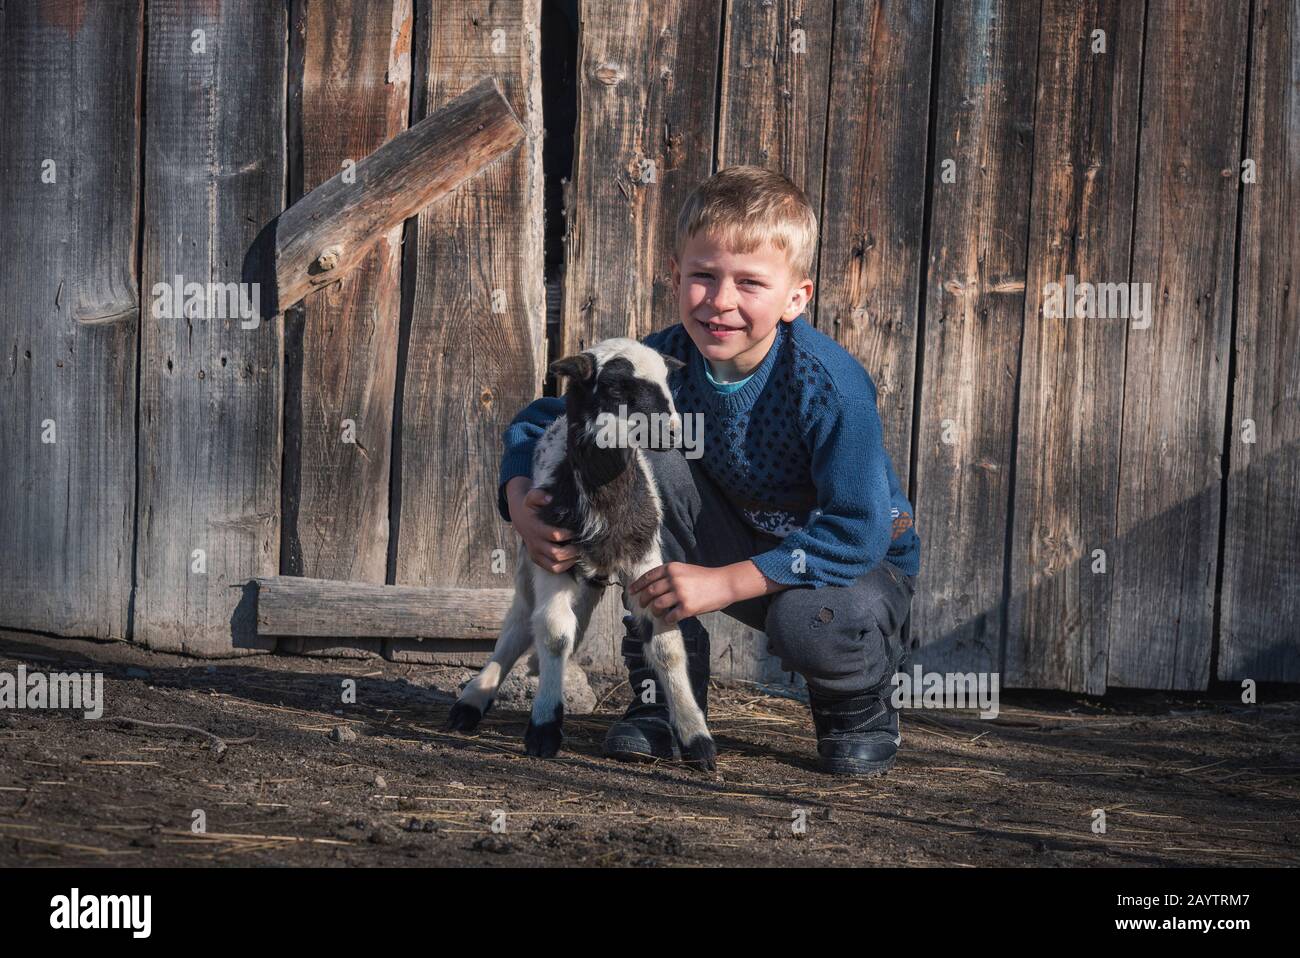 Krastava village, Rhodope montagnes / Bulgarie : Portrait de l'agneau de petit garçon dans la ferme. Banque D'Images